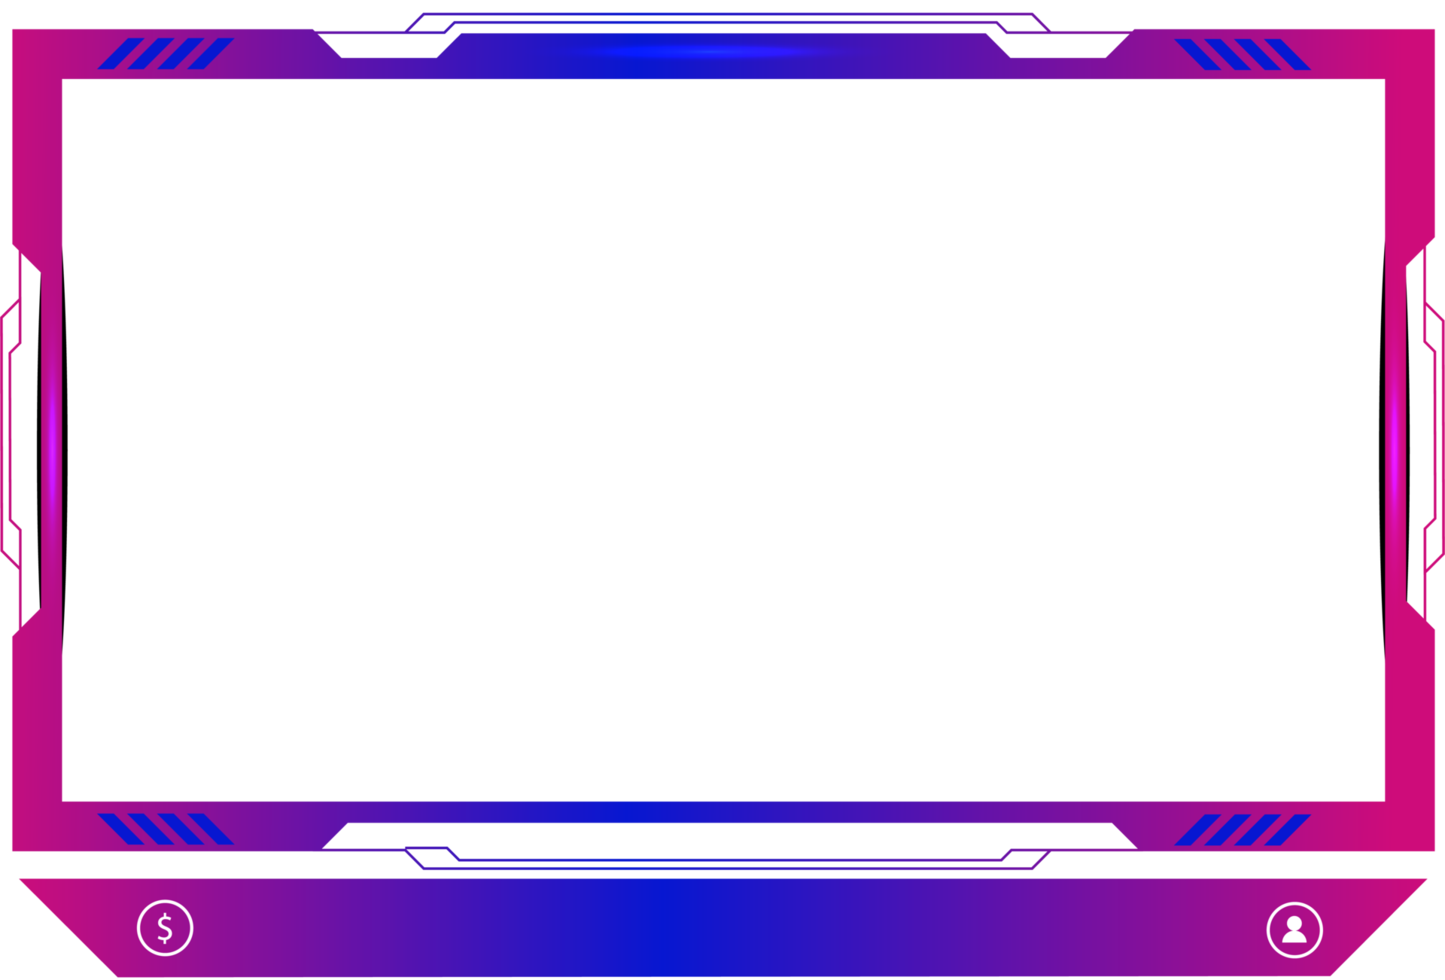 Live-Streaming-Overlay-Dekoration mit mädchenhaftem rosa und blauem Farbton. Online-Gaming-Bildschirmpanel und Rahmendesign für Gamer. live-broadcast-elemente png mit bunten tasten.